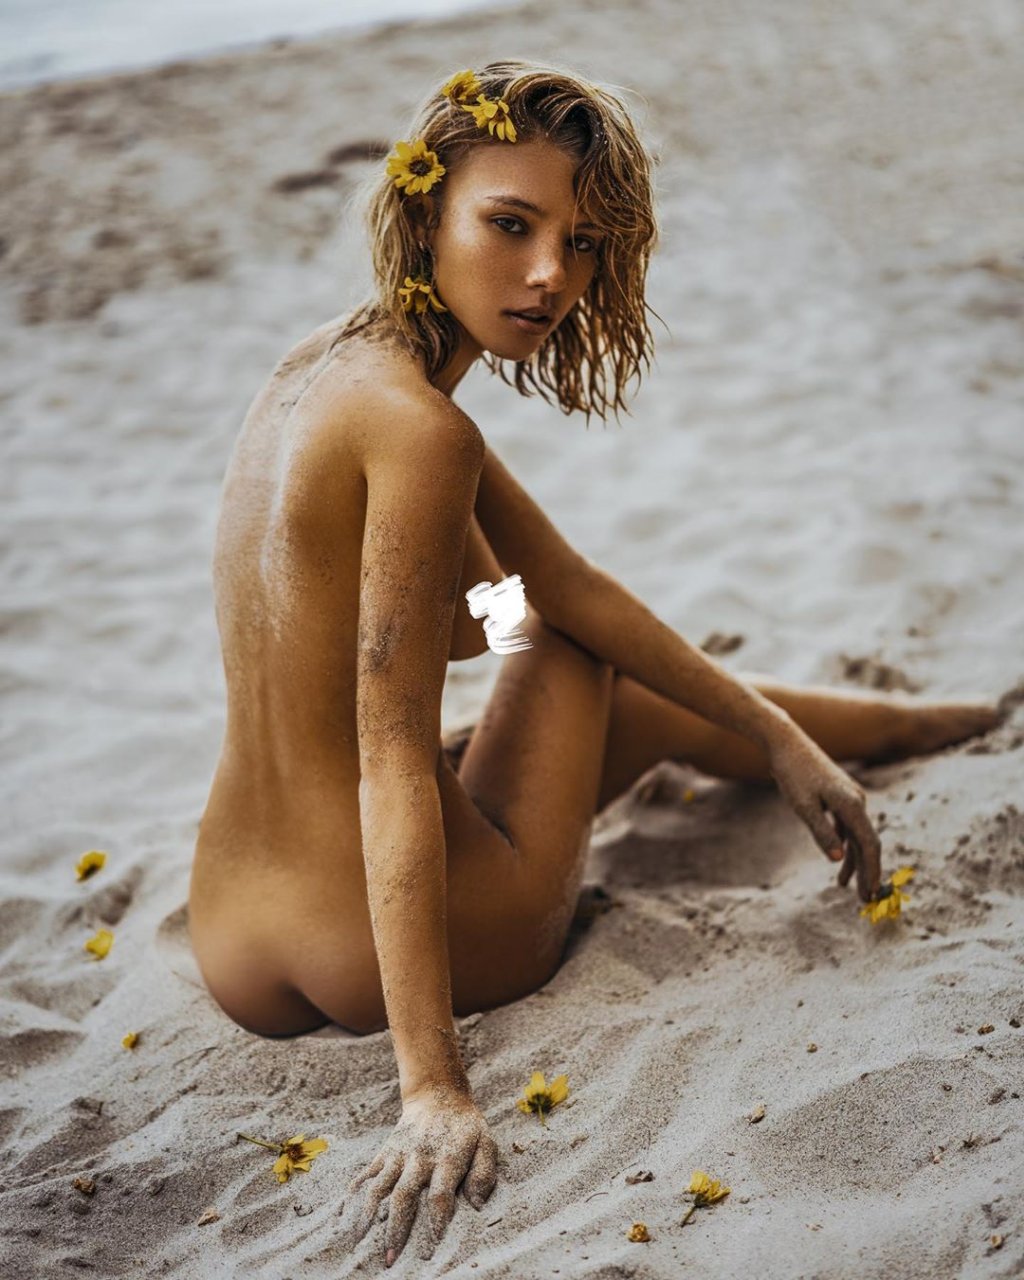 Rachel yampolsky nude